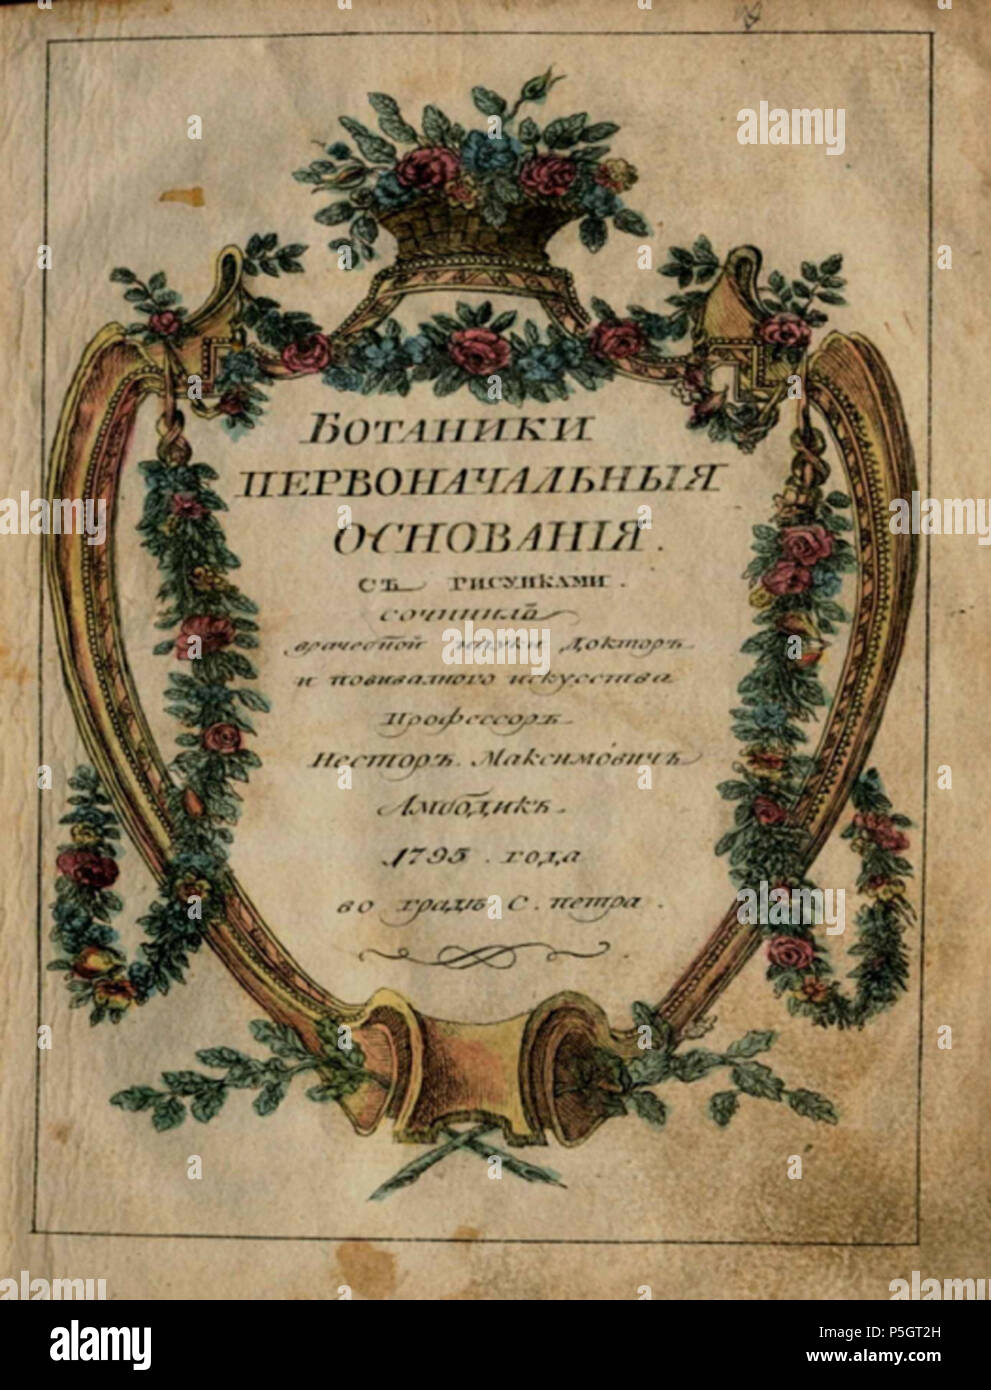 N/A. : "Botanisches Wörterbuch' . 1795. Nestor 92 Ambodyk botanika Ambodik-Maksimovich Foto de stock